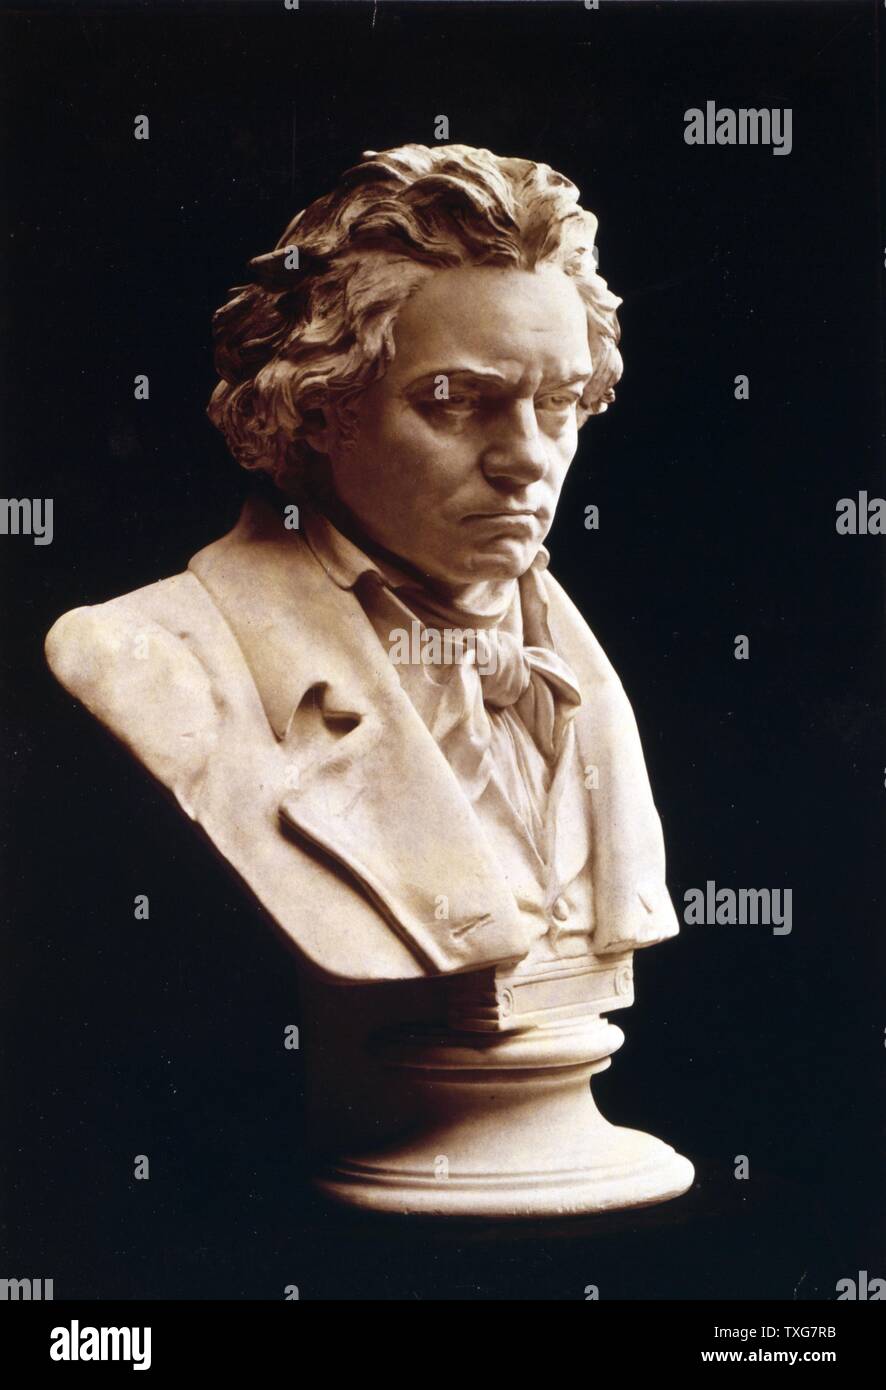 Büste von Ludwig van Beethoven, deutscher Komponist und Pianist. Einer der einflussreichsten westlichen Komponisten, deren Musik der Klassik und Romantik überbrückt Stockfoto